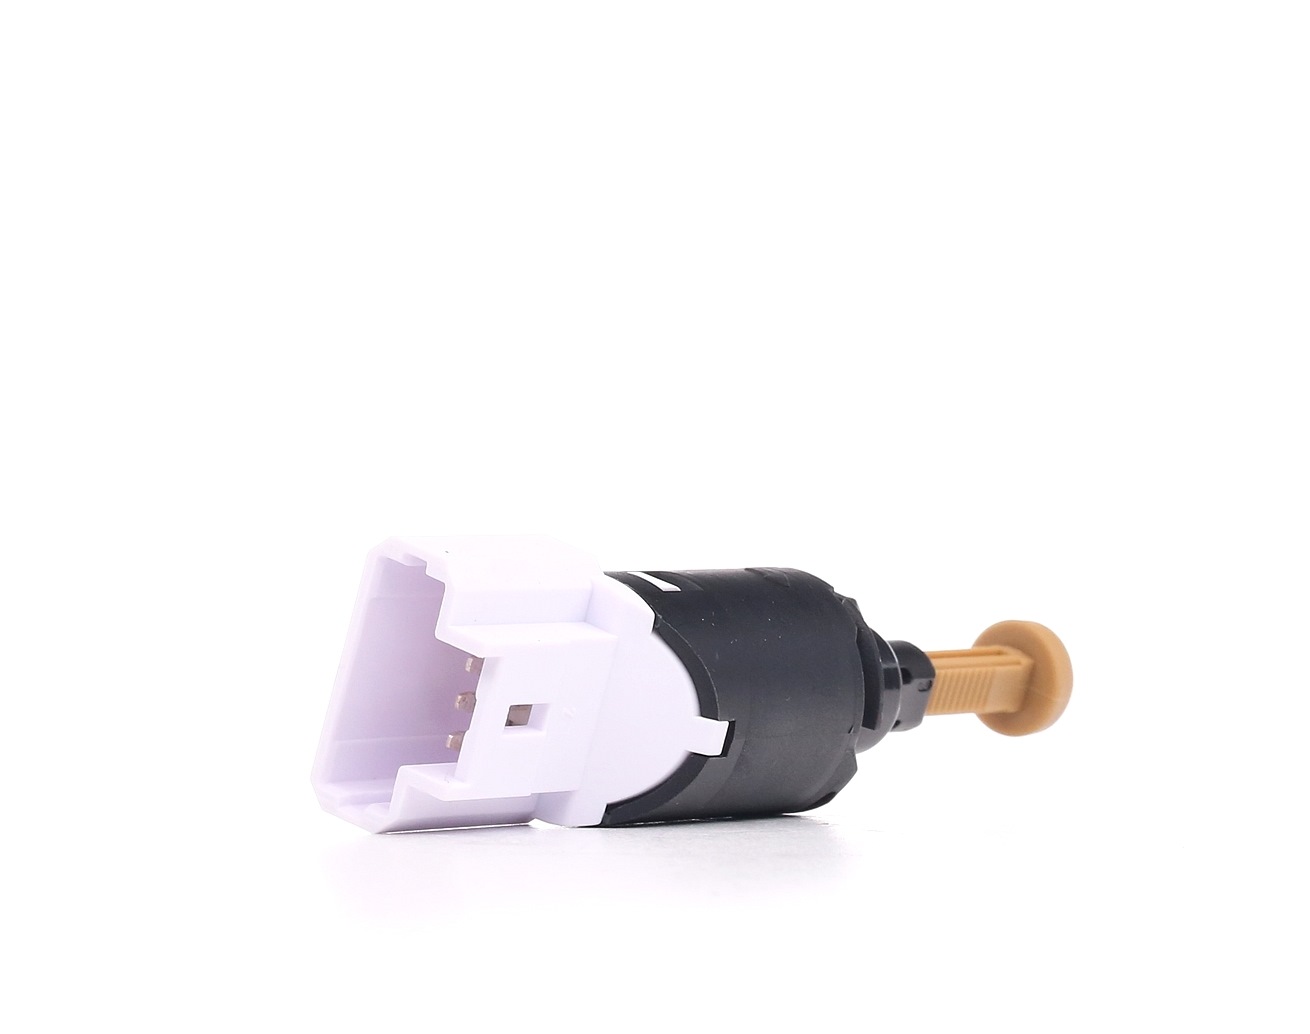 Peugeot BOXER Brake light switch pedal stopper 8744237 EPS 1.810.197 online buy